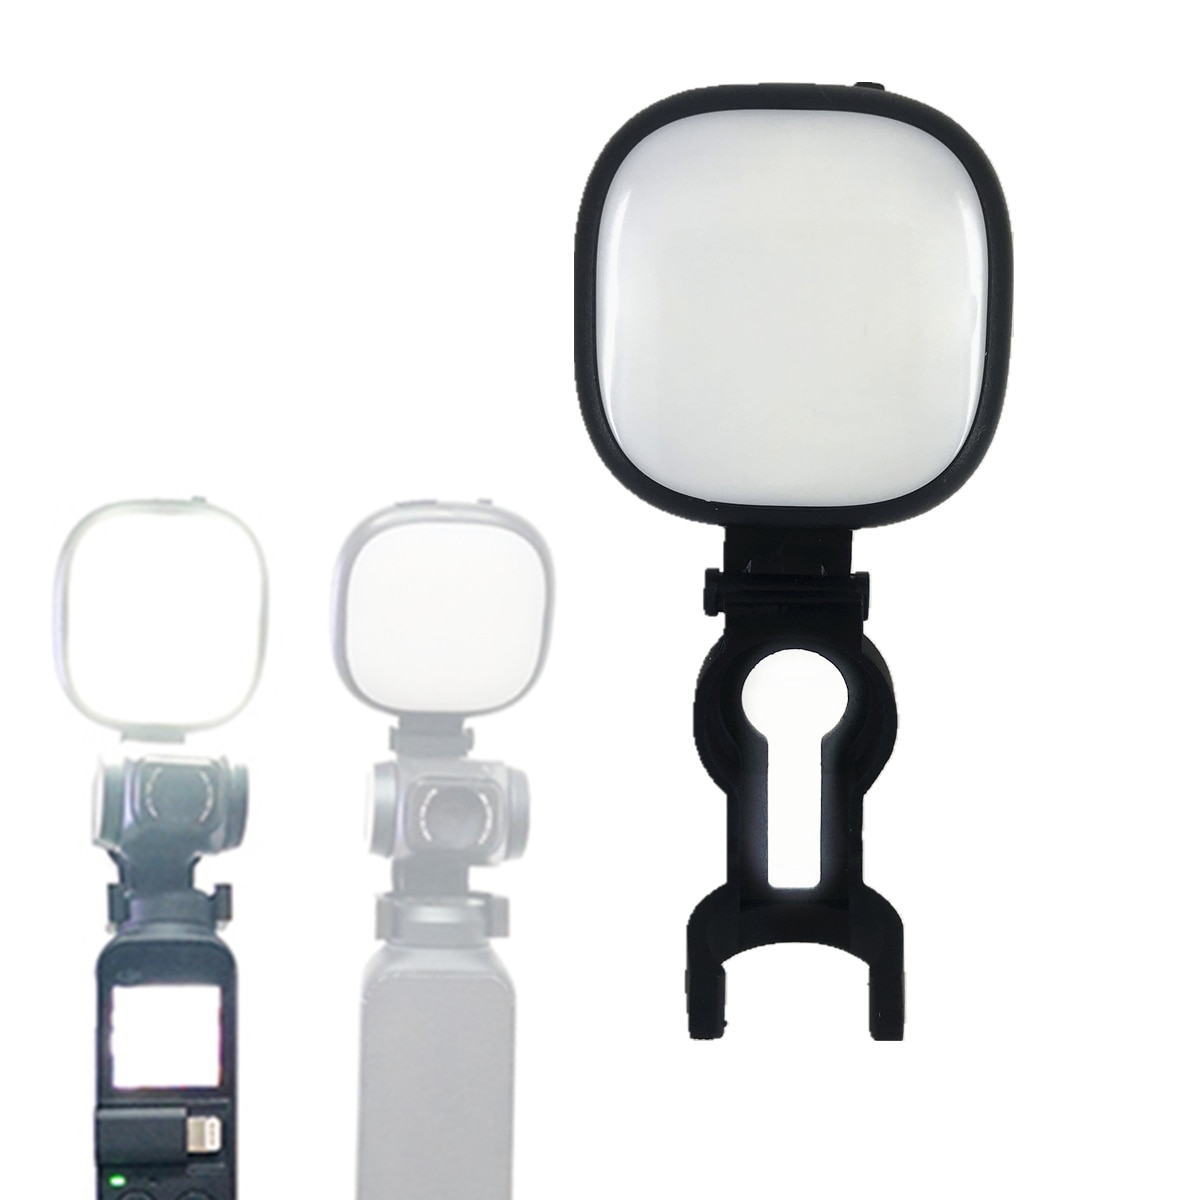 5600 K/3200 K Verstelbare Led Licht Invullen Lamp + Beugel Klem Adapter voor DJI Osmo Pocket Handheld Selfie draagbare